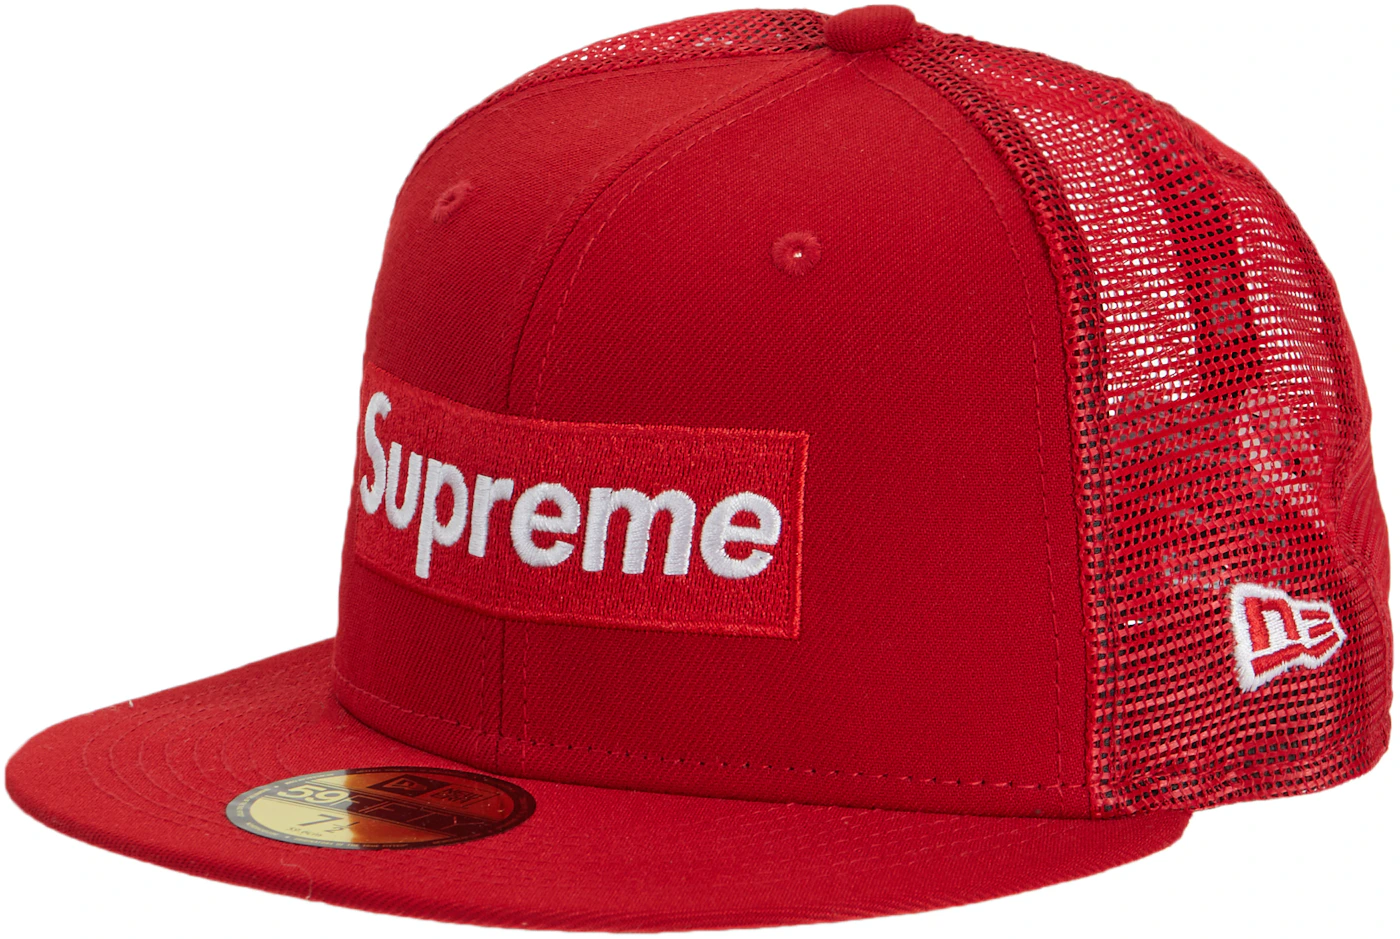 Supreme S/S 2012 New Era Denim Red Box Logo Hat Size 7 5/8